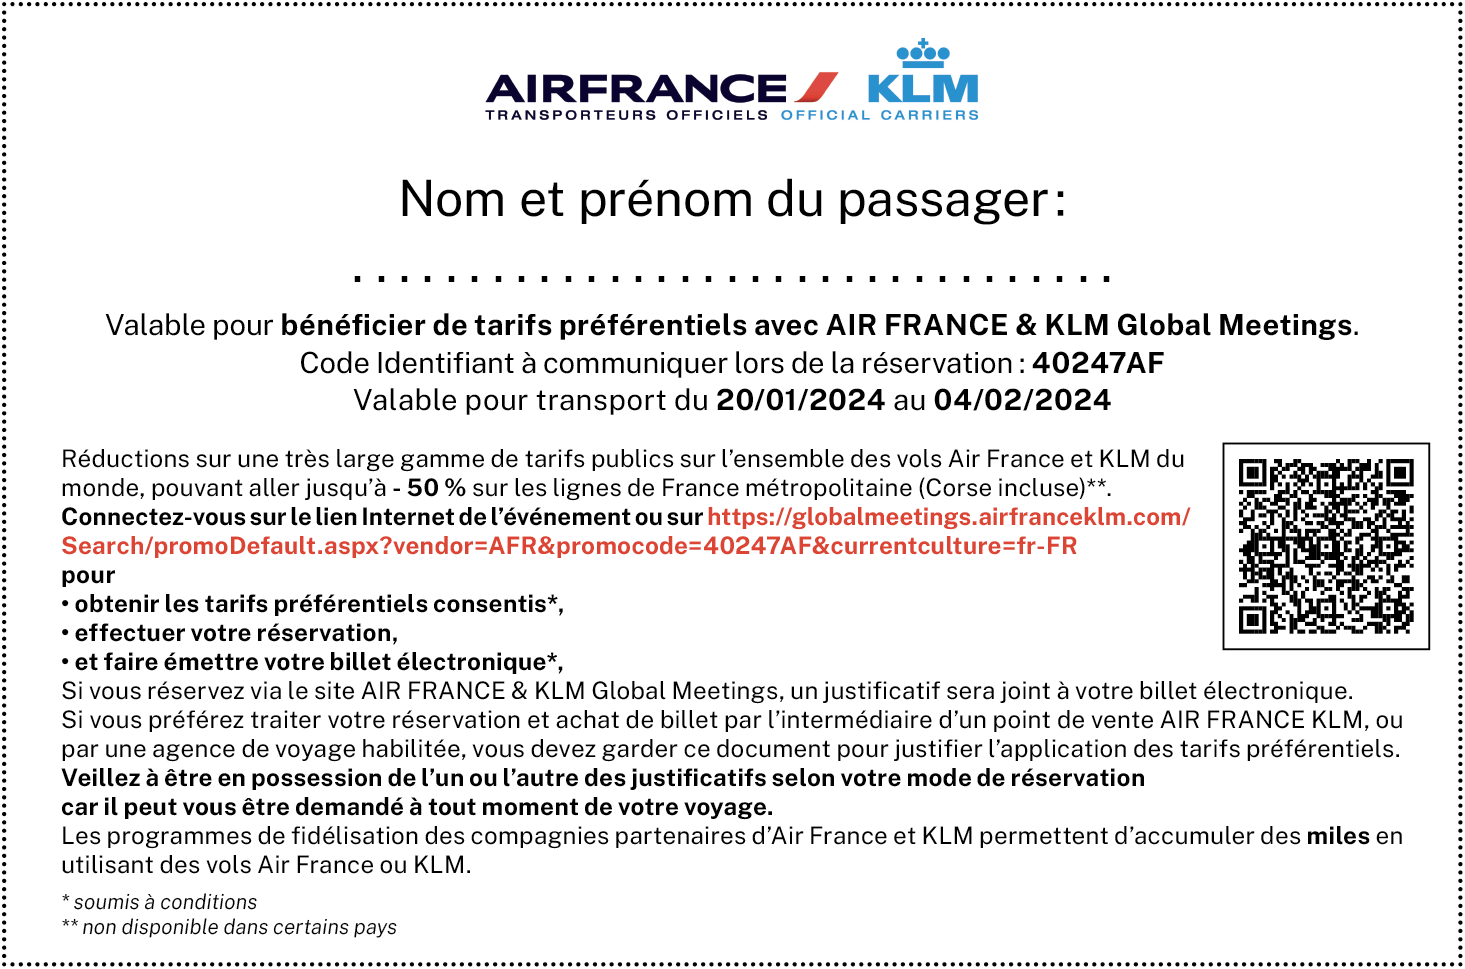 Code Identifiant à communiquer lors de la réservation: 40247AF Valable pour transport du 20/01/2024 au 04/02/2024 Réductions sur une très large gamme de tarifs publics sur l'ensemble des vols Air France et KLM du monde, pouvant aller jusqu'à -50 % sur les lignes de France métropolitaine (Corse incluse)**. Connectez-vous sur le lien de l'événement pour obtenir les tarifs préférentiels consentis*, effectuer votre réservation et faire émettre votre billet électronique (soumis à conditions= Si vous réservez via le site AIR FRANCE & KLM Global Meetings, un justificatif sera joint à votre billet électronique. Si vous préférez traiter votre réservation et achat de billet par l'intermédiaire d'un point de vente AIR FRANCE KLM, ou par une agence de voyage habilitée, vous devez garder ce document pour justifier l'application des tarifs préférentiels. Veillez à être en possession de l'un ou l'autre des justificatifs selon votre mode de réservation  Les programmes de fidélisation des compagnies partenaires d'Air France et KLM permettent d'accumuler des miles en utilisant des vols Air France ou KLM.